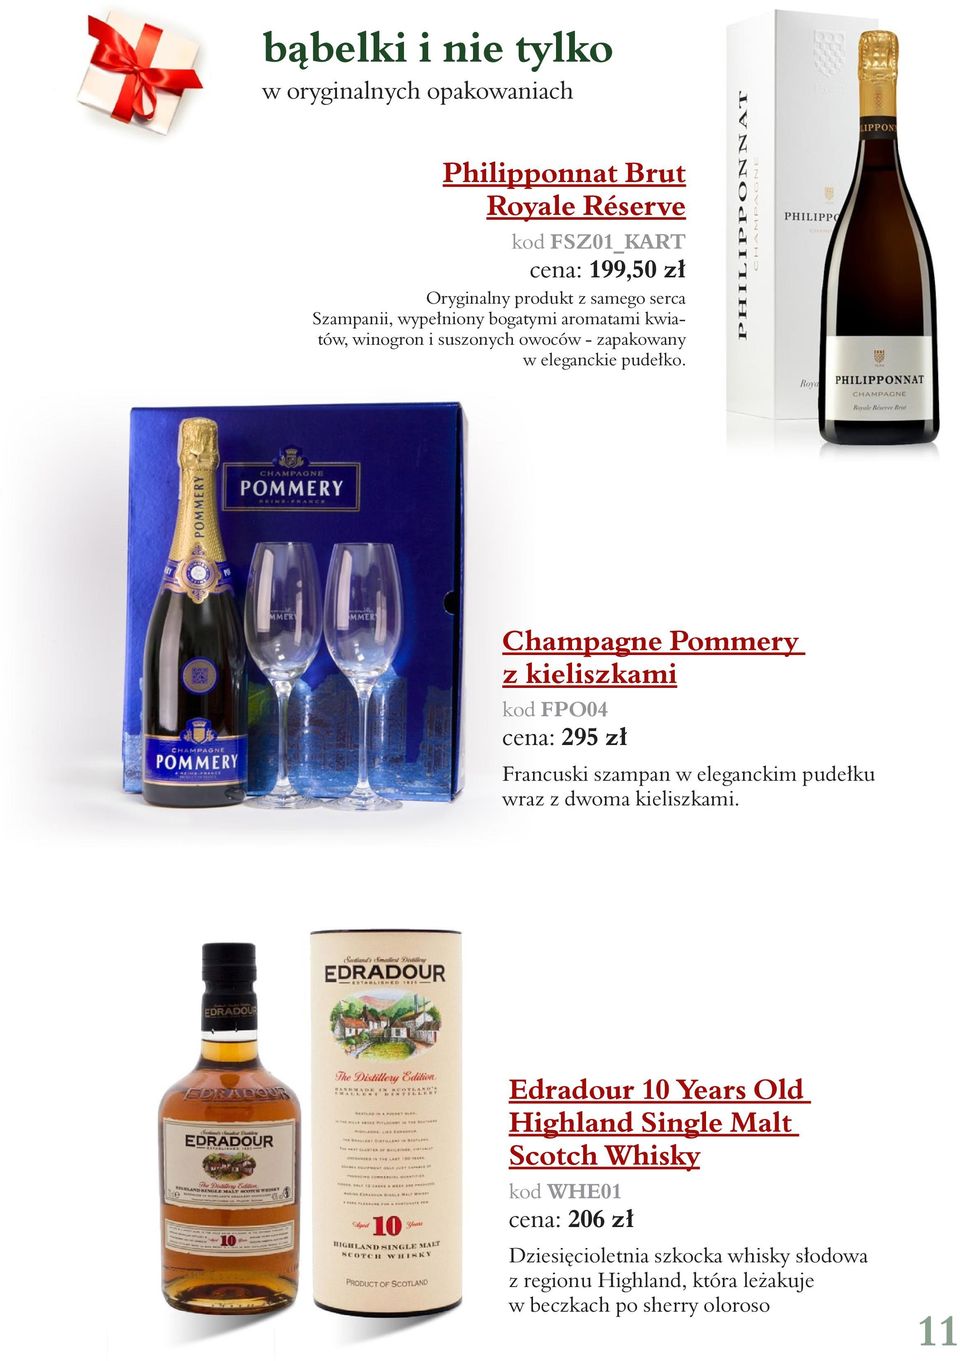 Champagne Pommery z kieliszkami kod FPO04 cena: 295 zł Francuski szampan w eleganckim pudełku wraz z dwoma kieliszkami.